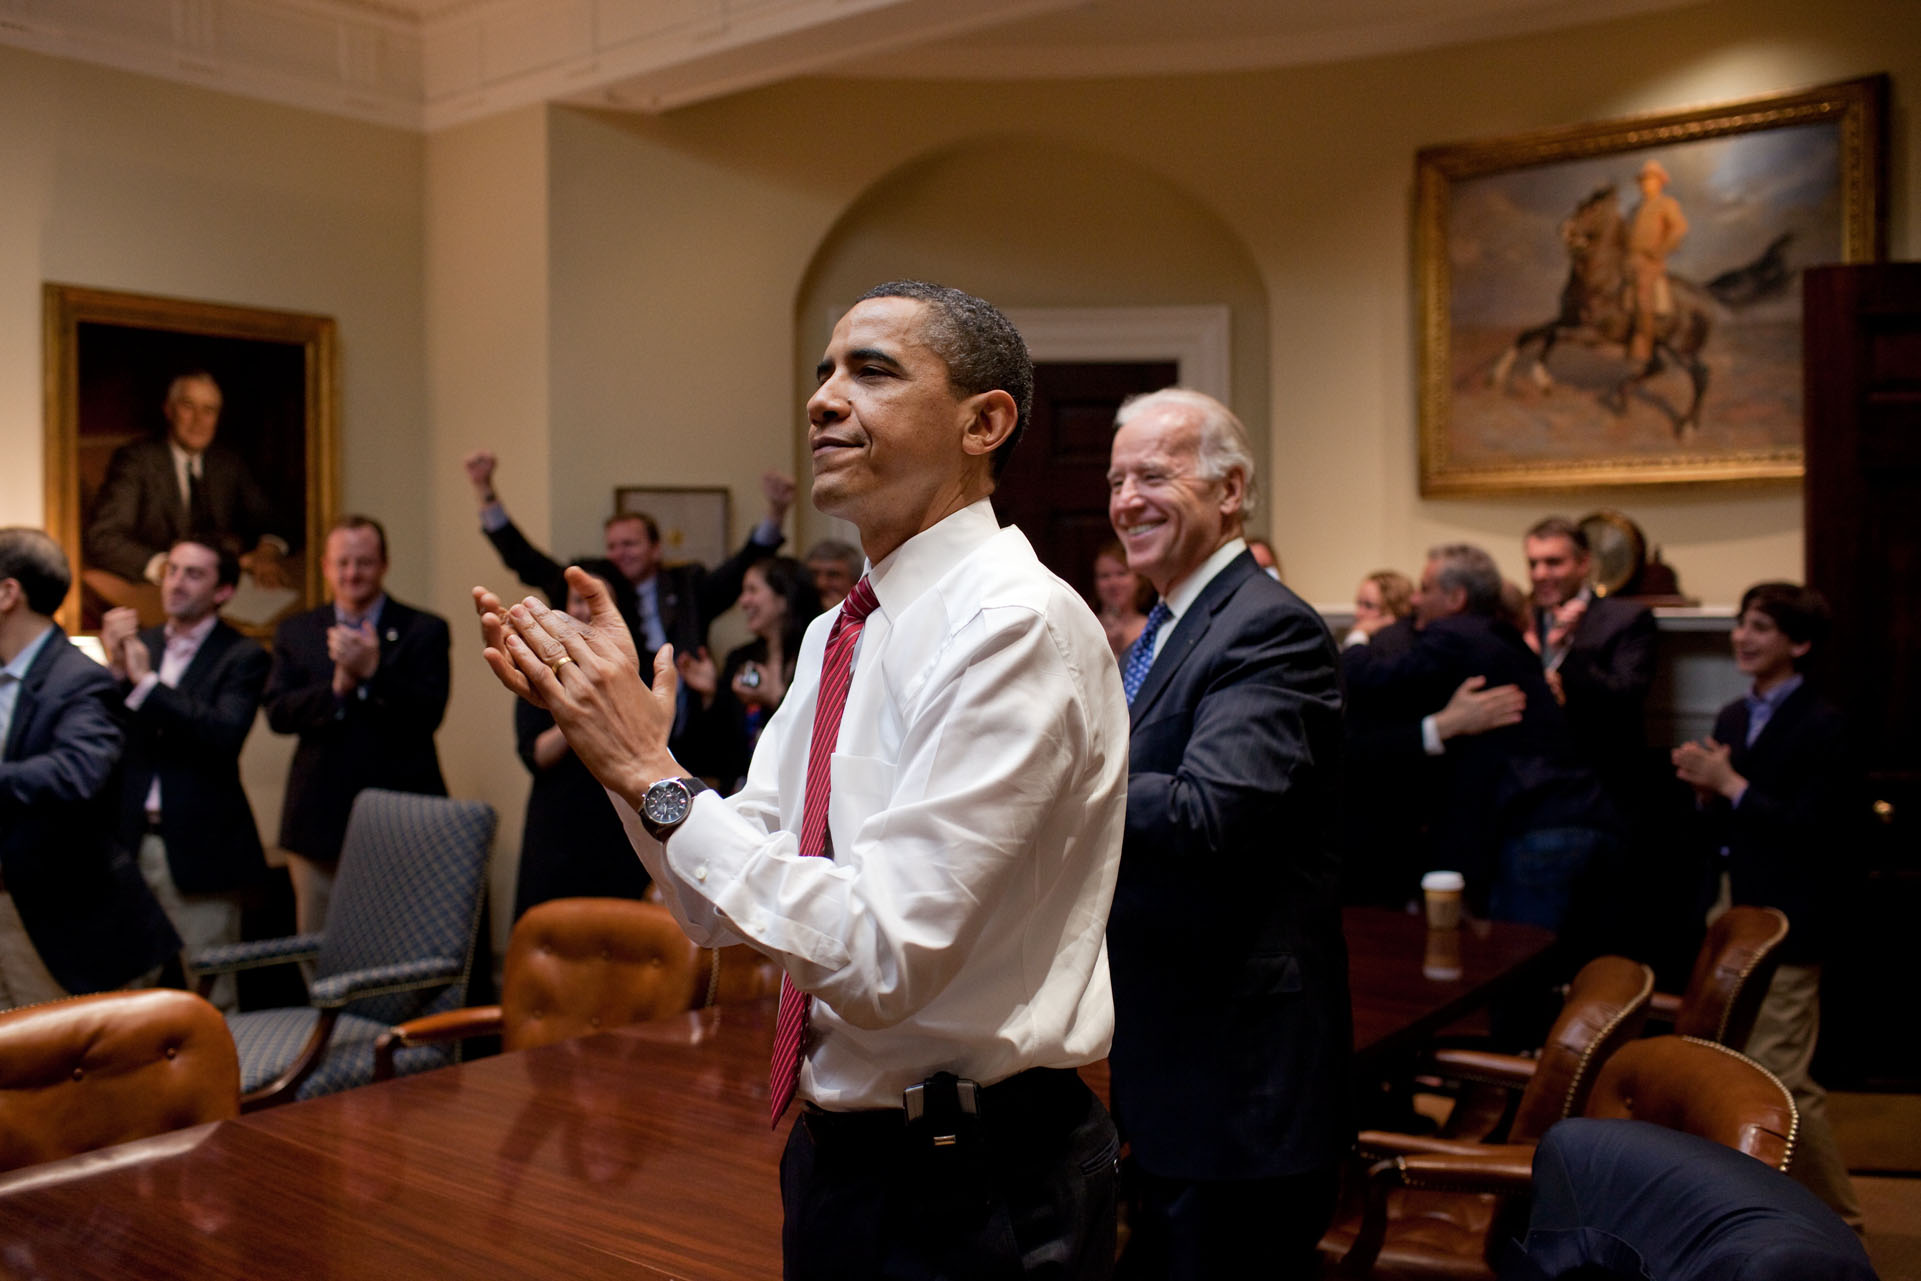 โอบามาและไบเดนปรบมือขณะรับชมสภาผู้แทนราษฎรลงคะแนนผ่านร่างกฎหมายรัฐบัญญัติประกันสุขภาพถ้วนหน้า หรือ ‘โอบามาแคร์’ / Official White House Photo by Pete Souza